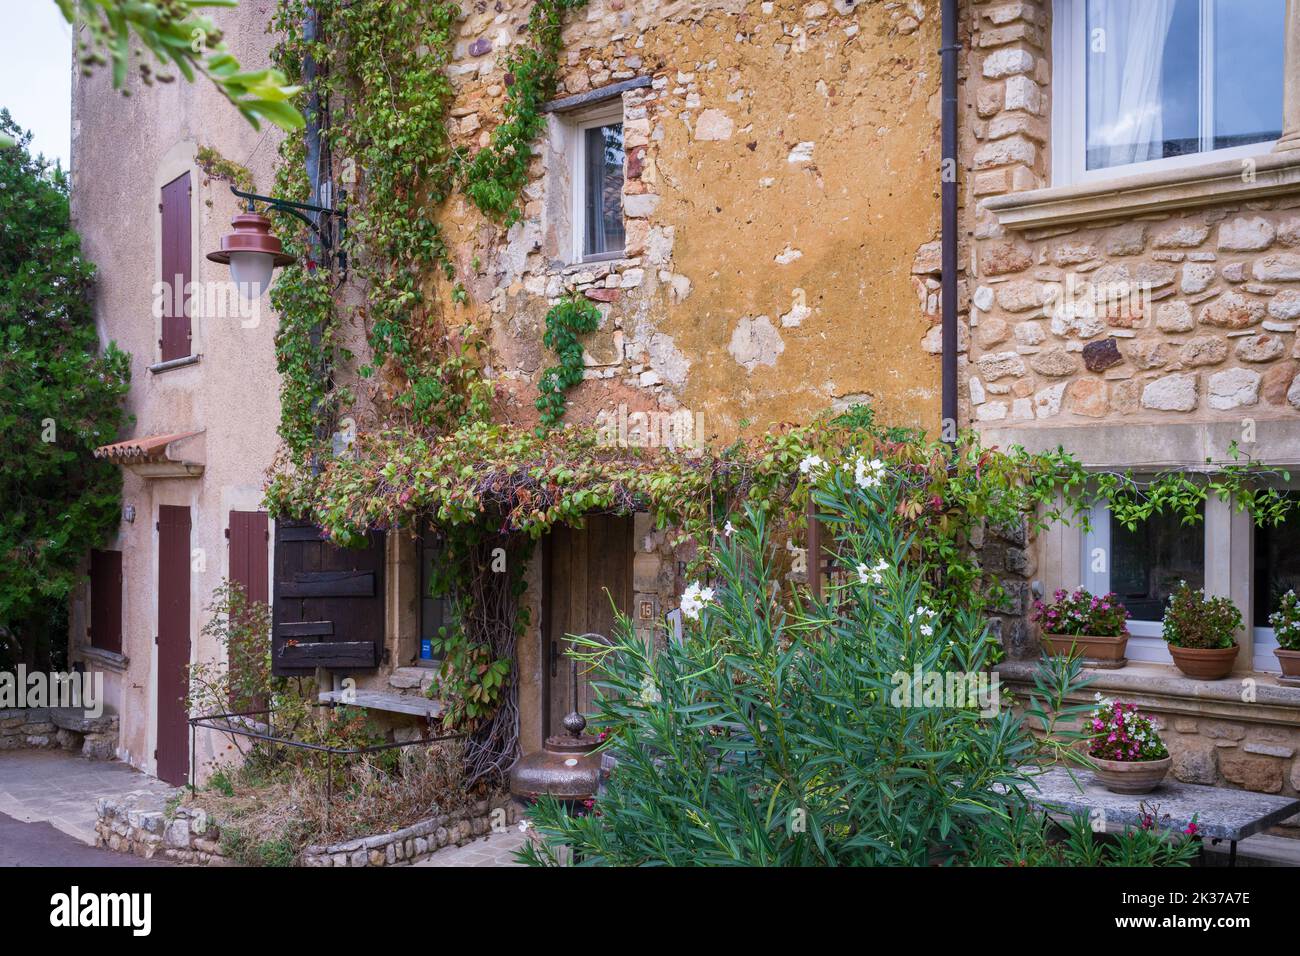 Maison typique à Roussillon (sud de la France) avec ses couleurs ocre et pastel. Banque D'Images